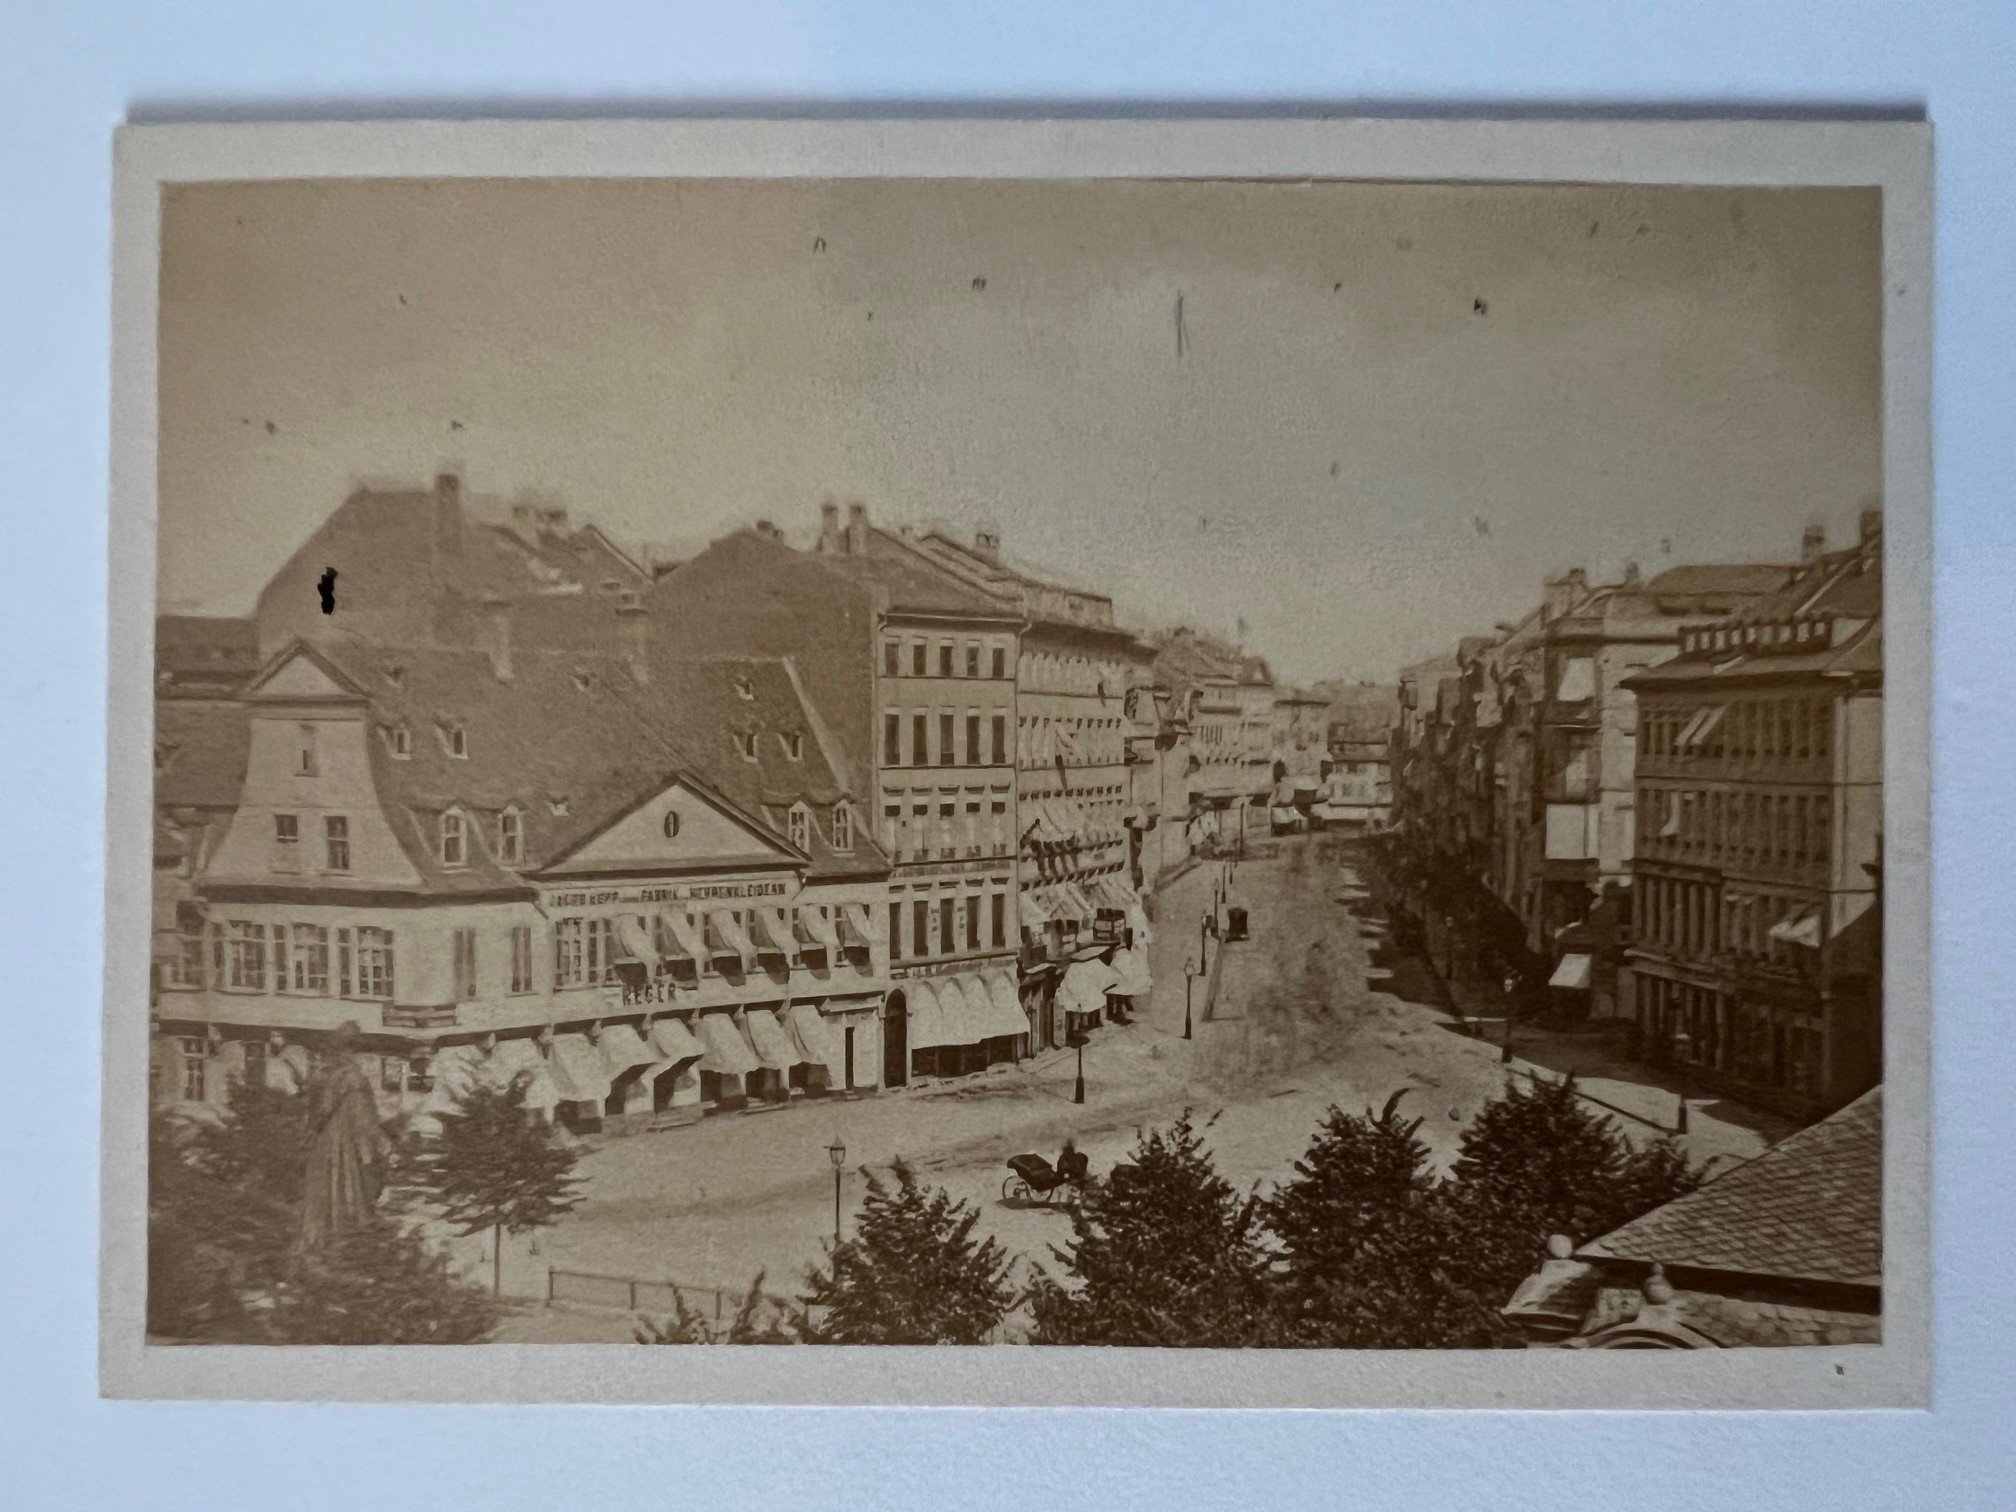 CdV, Unbekannter Fotograf, Zeil, ca. 1870. (Taunus-Rhein-Main - Regionalgeschichtliche Sammlung Dr. Stefan Naas CC BY-NC-SA)